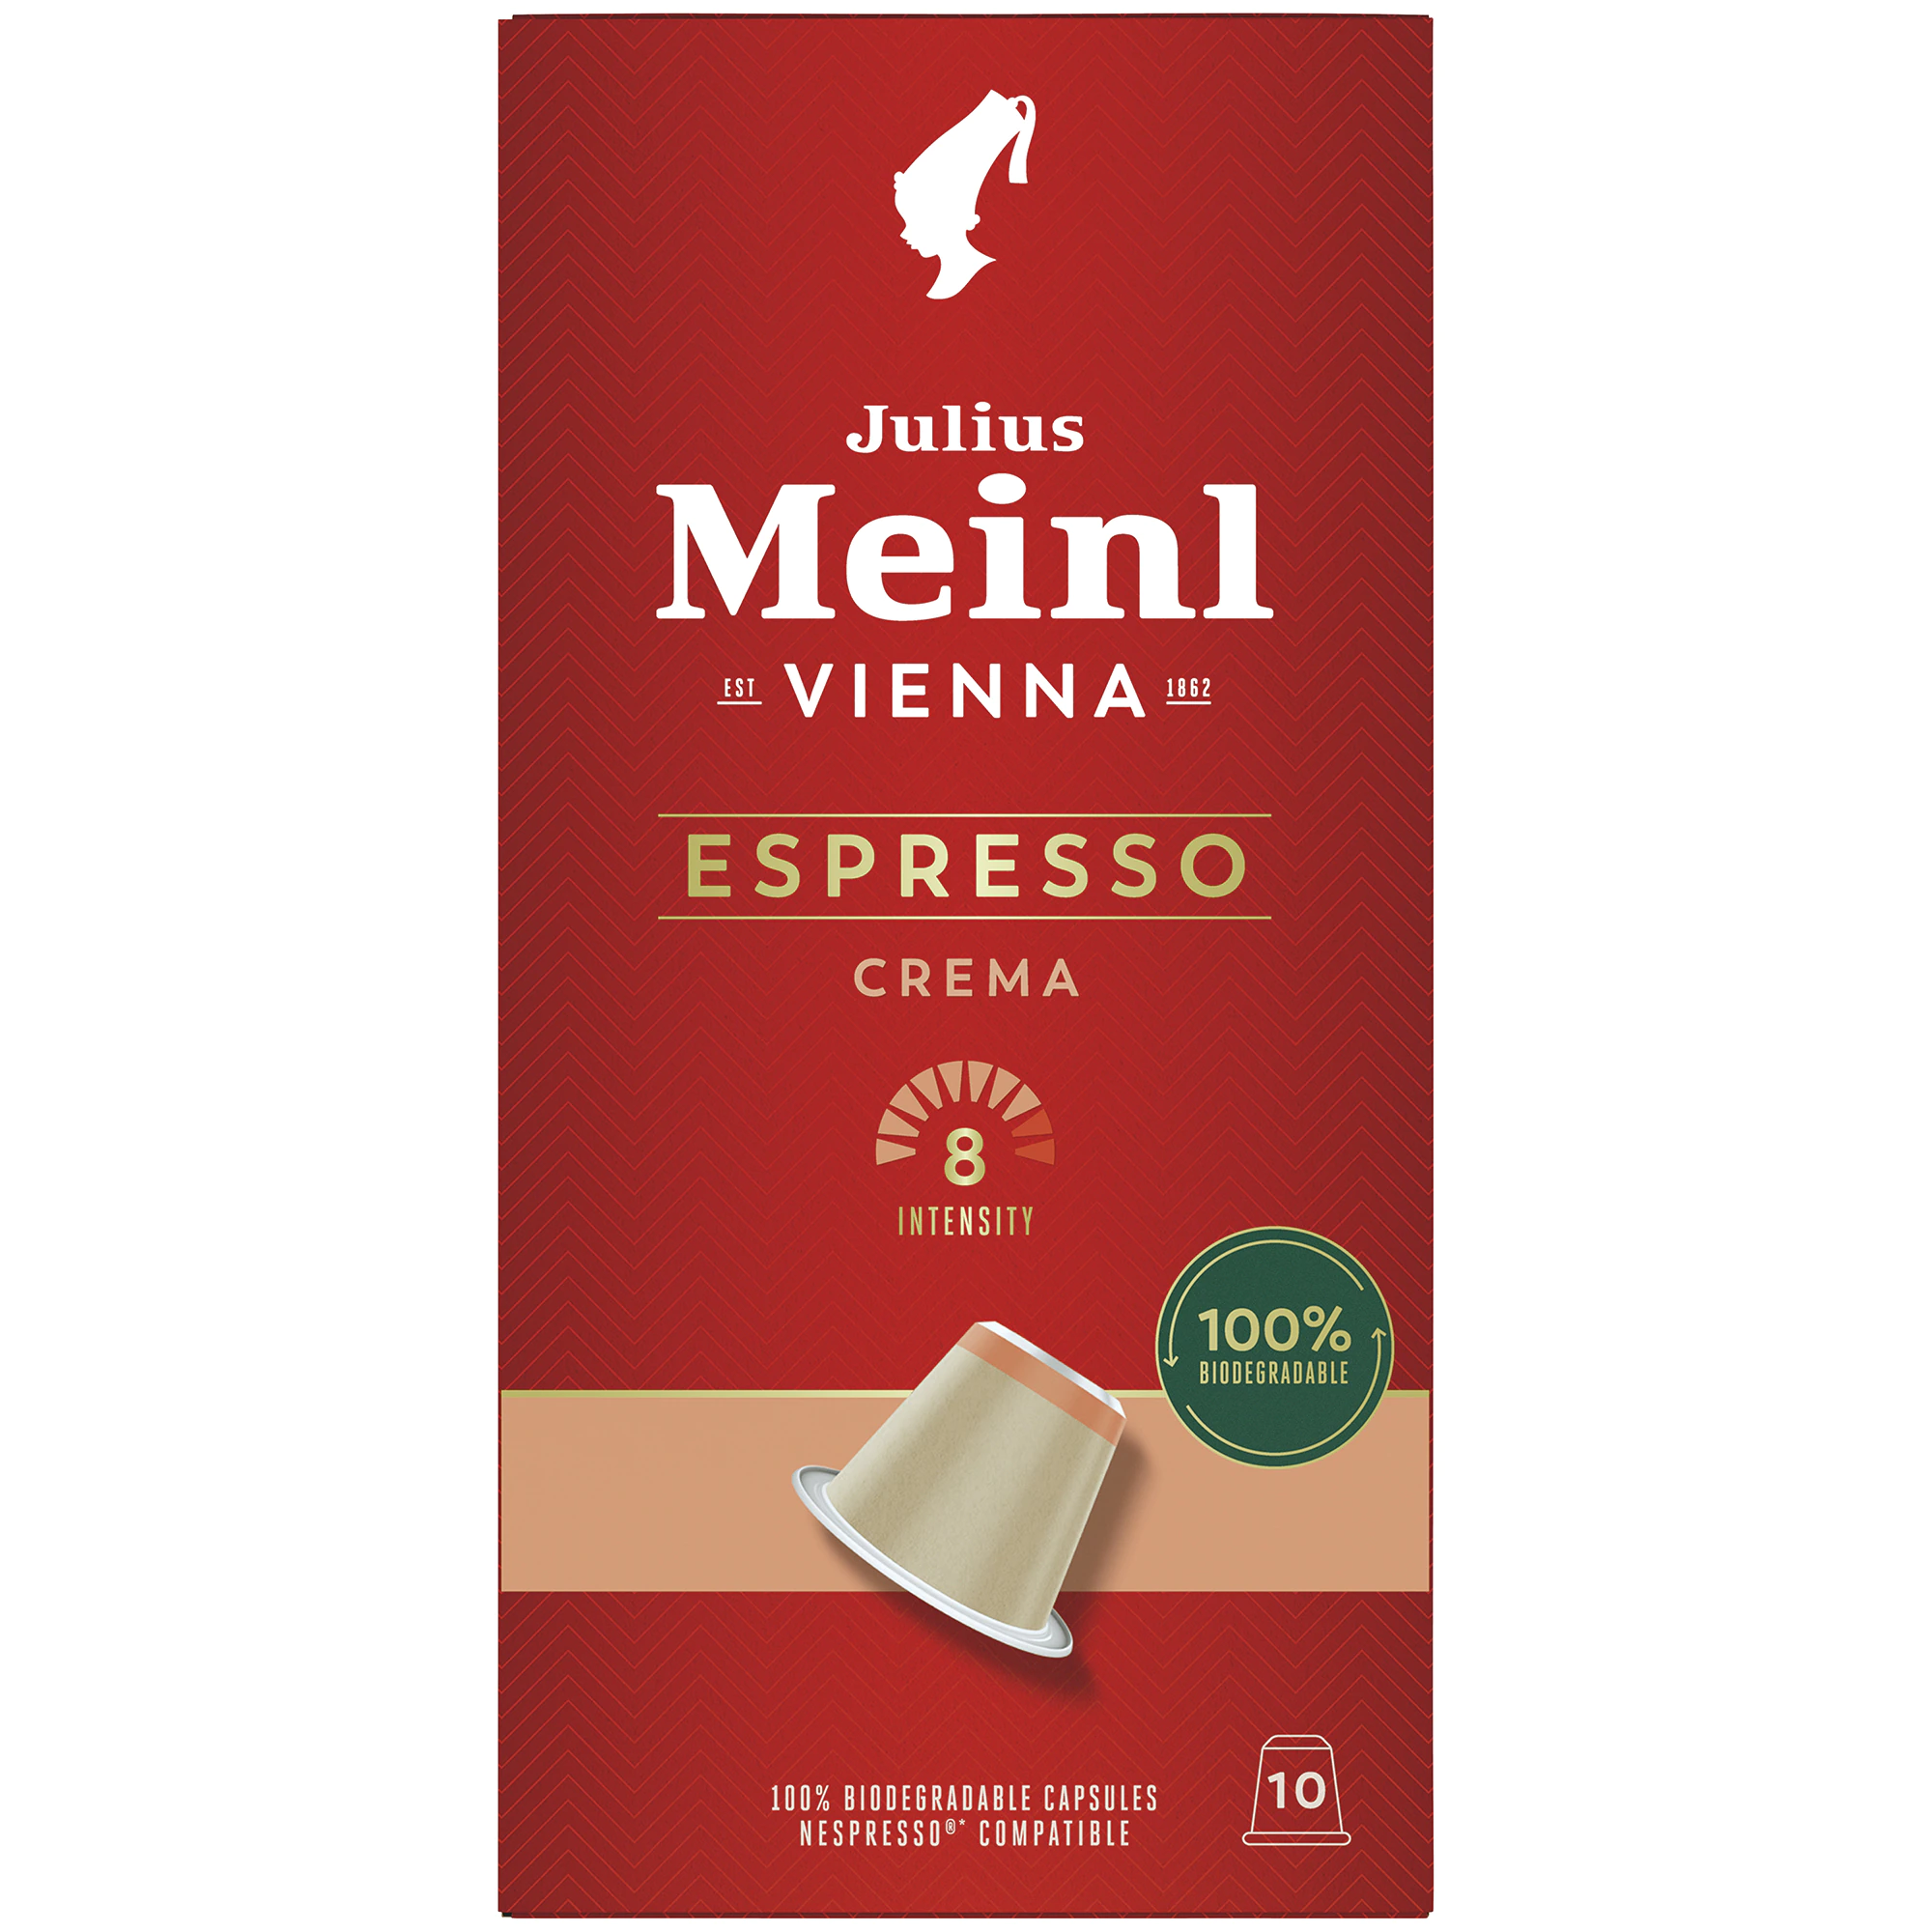 julius meinl espresso crema 10 capsule nespresso kfea 315663d11514bdb3a Cafea Julius Meinl